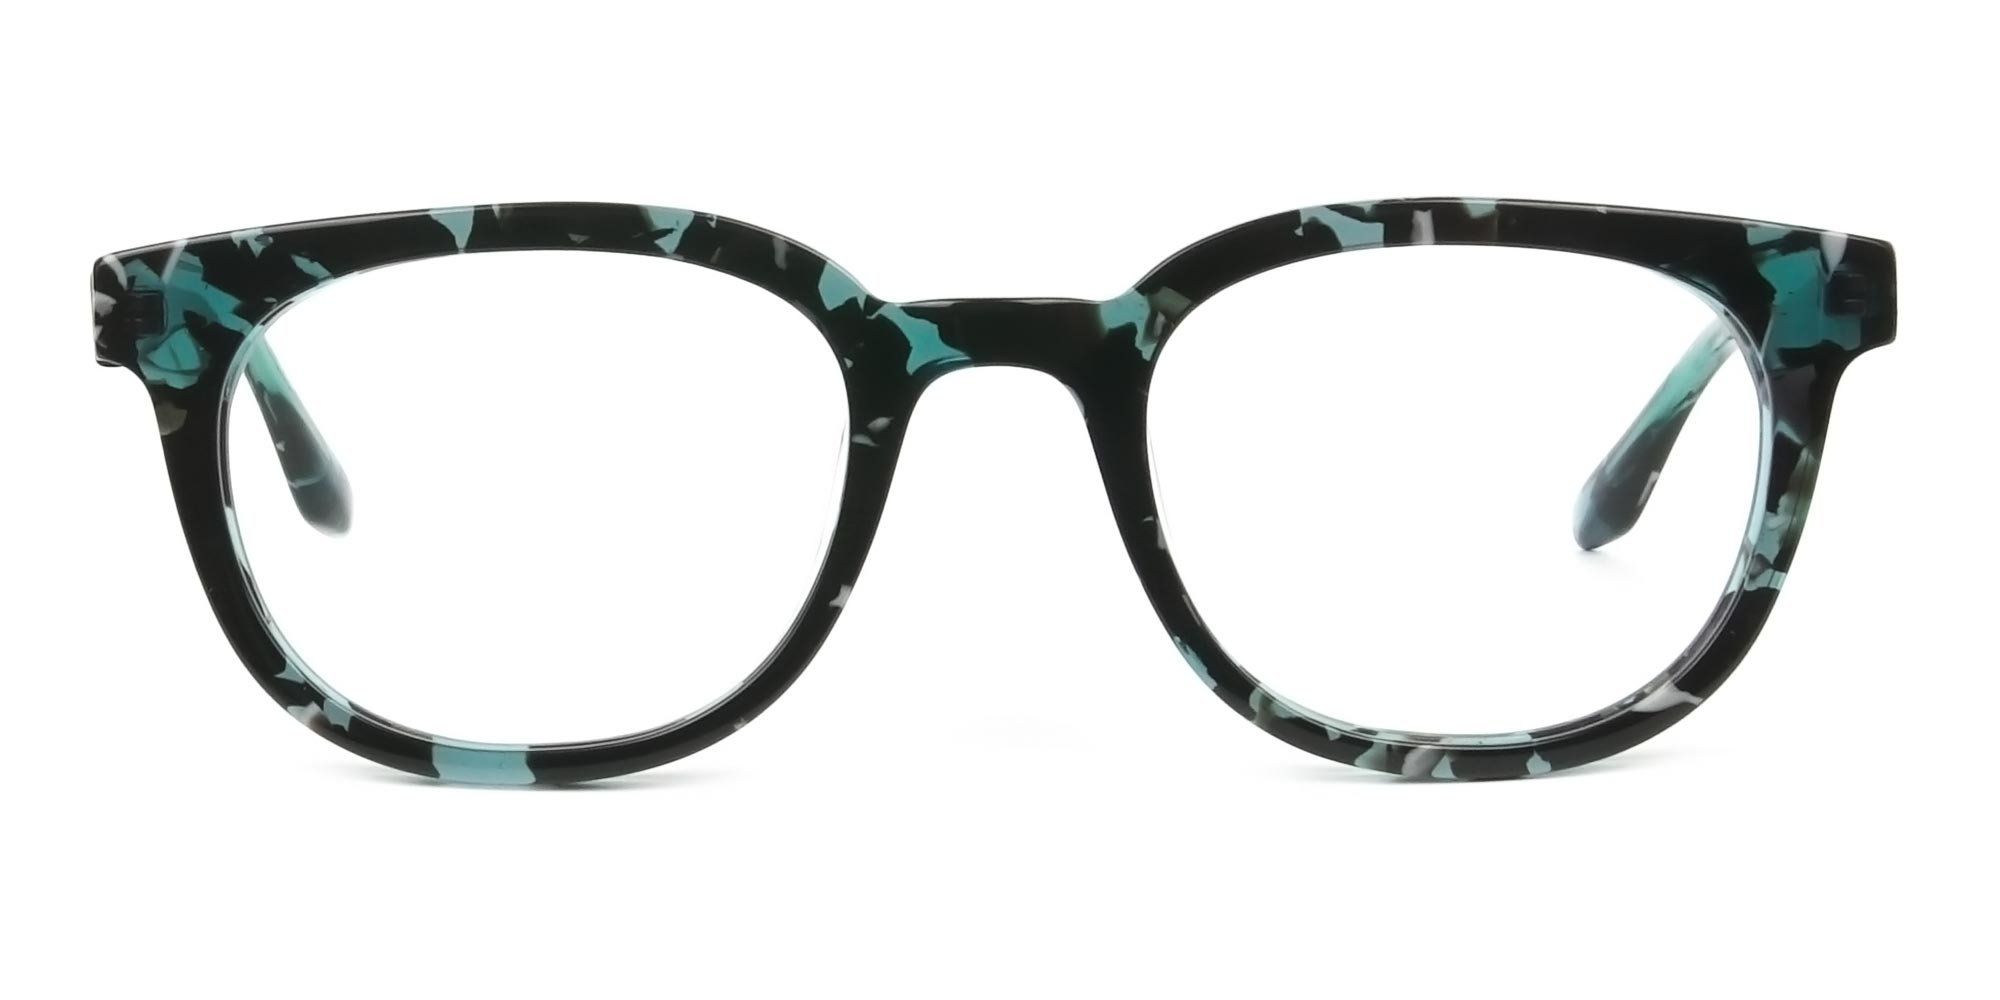 Hipster Tortoise Turquoise Green Glasses